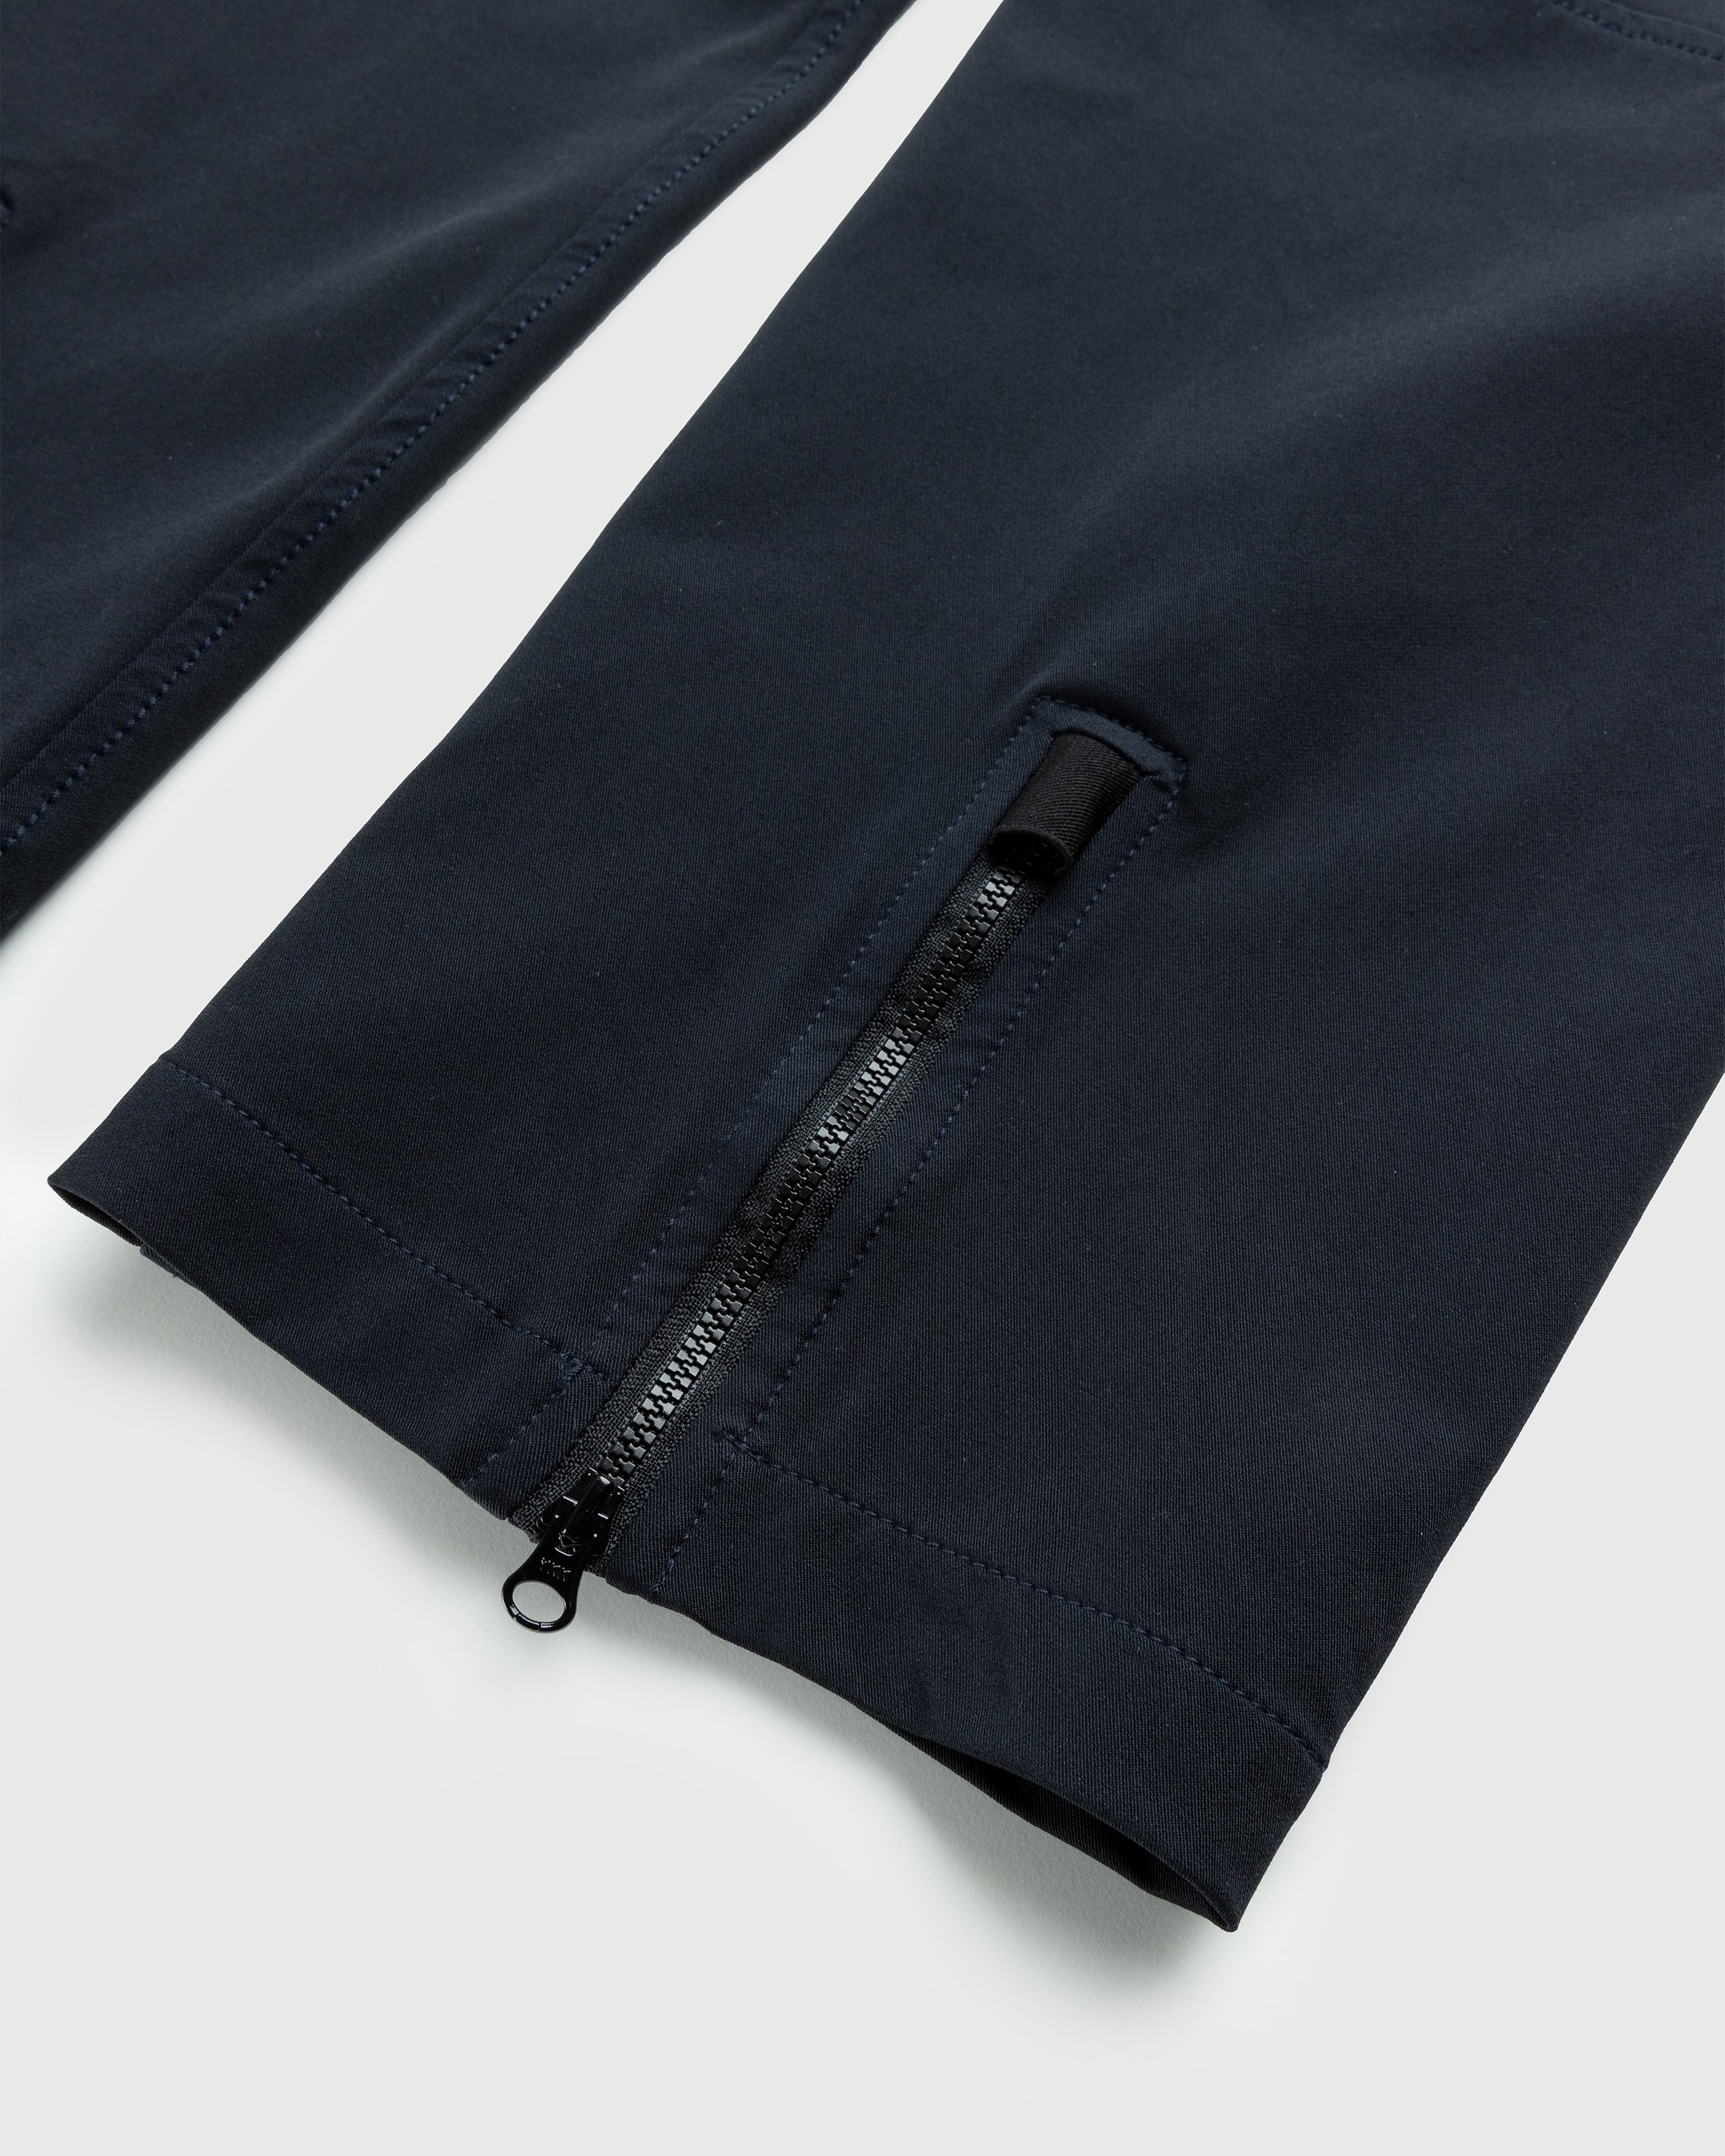 Stone Island - Nylon Cargo Pants Navy Blue - Clothing - Blue - Image 6